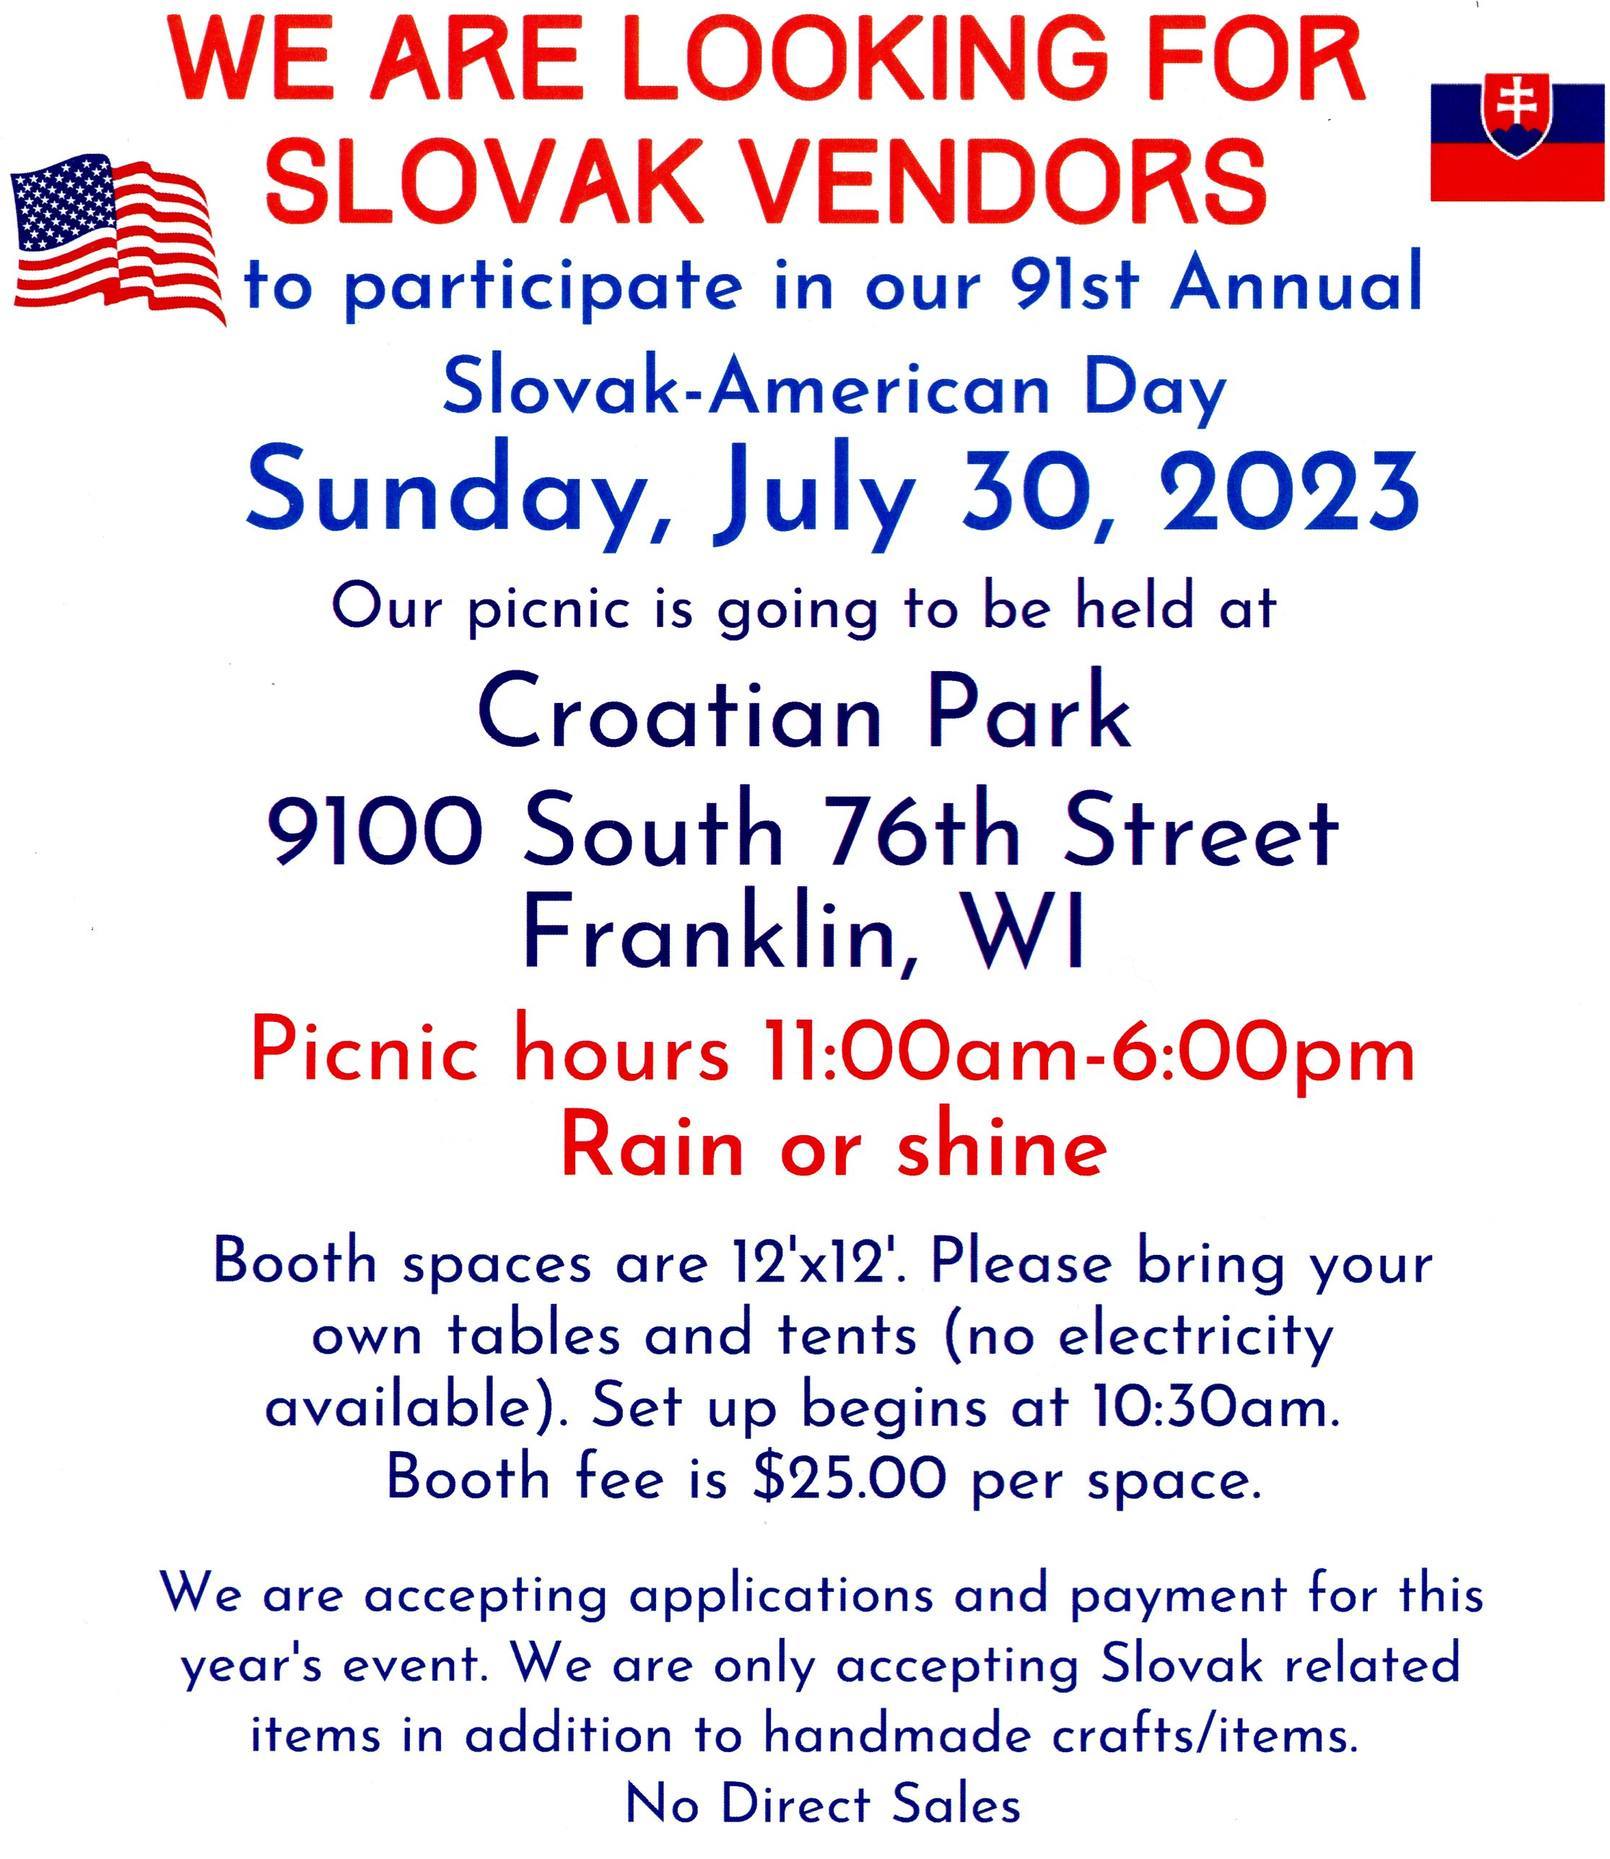 91st Annual Slovak-American Day Picnic / 91. slovensko-americký Deň piknik 2023 Franklin